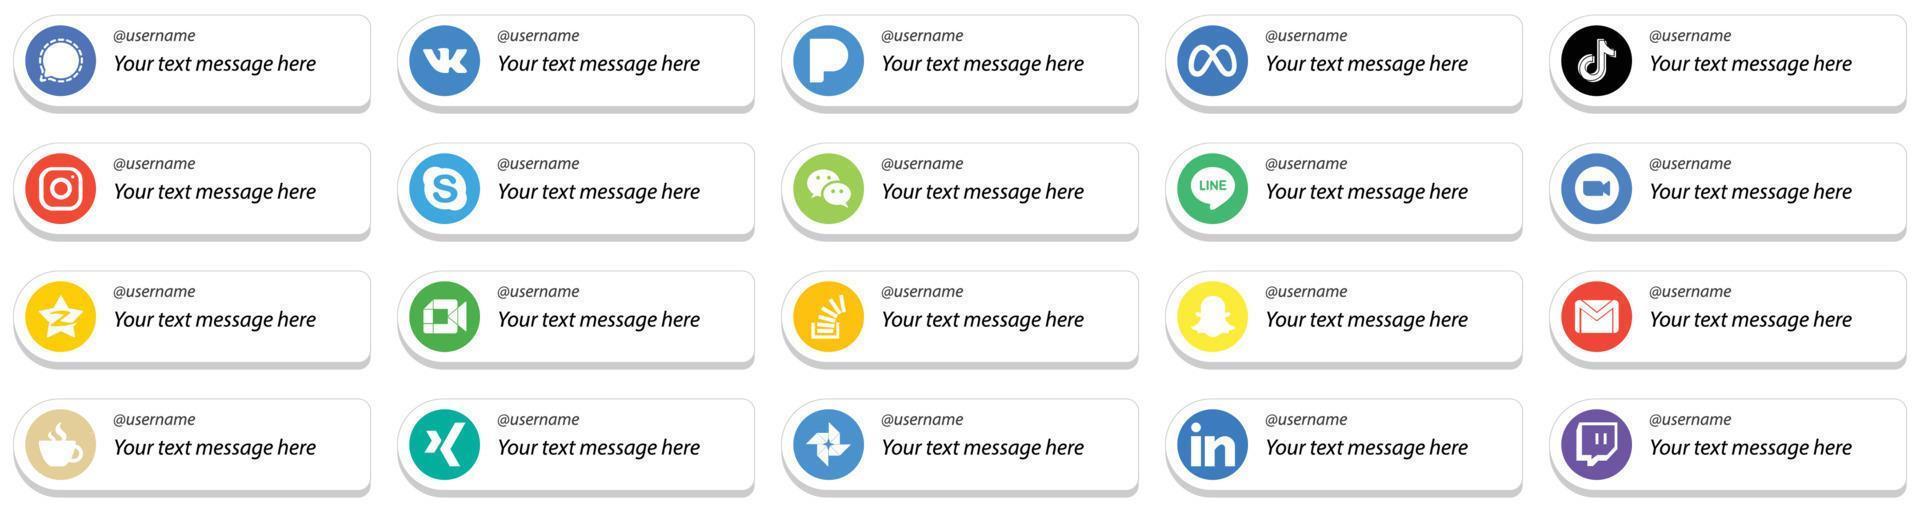 20 style de carte simple suivez-moi des icônes de médias sociaux avec un message personnalisable tel que wechat. Skype. icônes douyin et instagram. polyvalent et de haute qualité vecteur